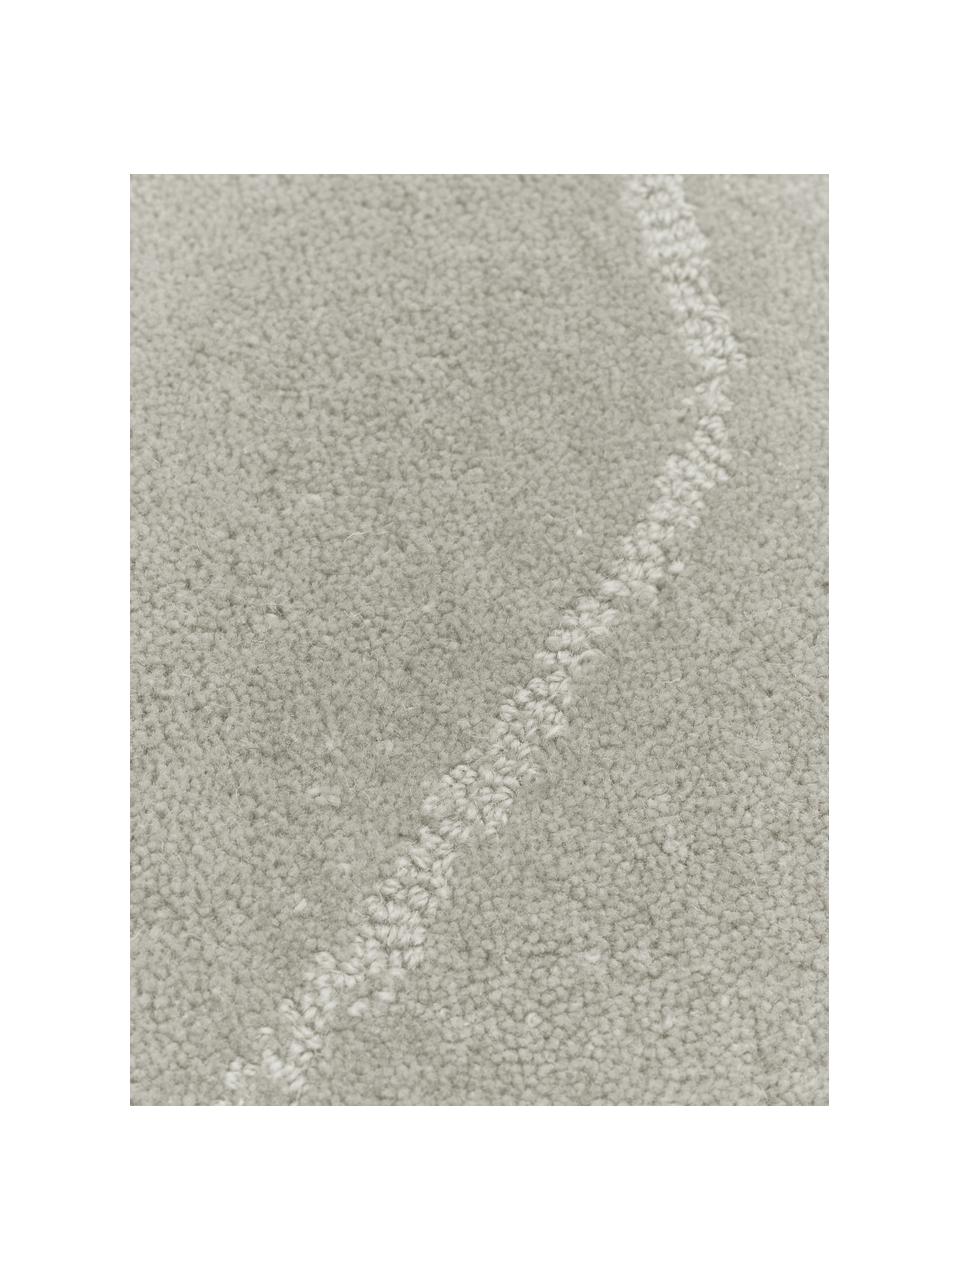 Kulatý ručně všívaný vlněný koberec Aaron, Greige, Ø 120 cm (velikost S)